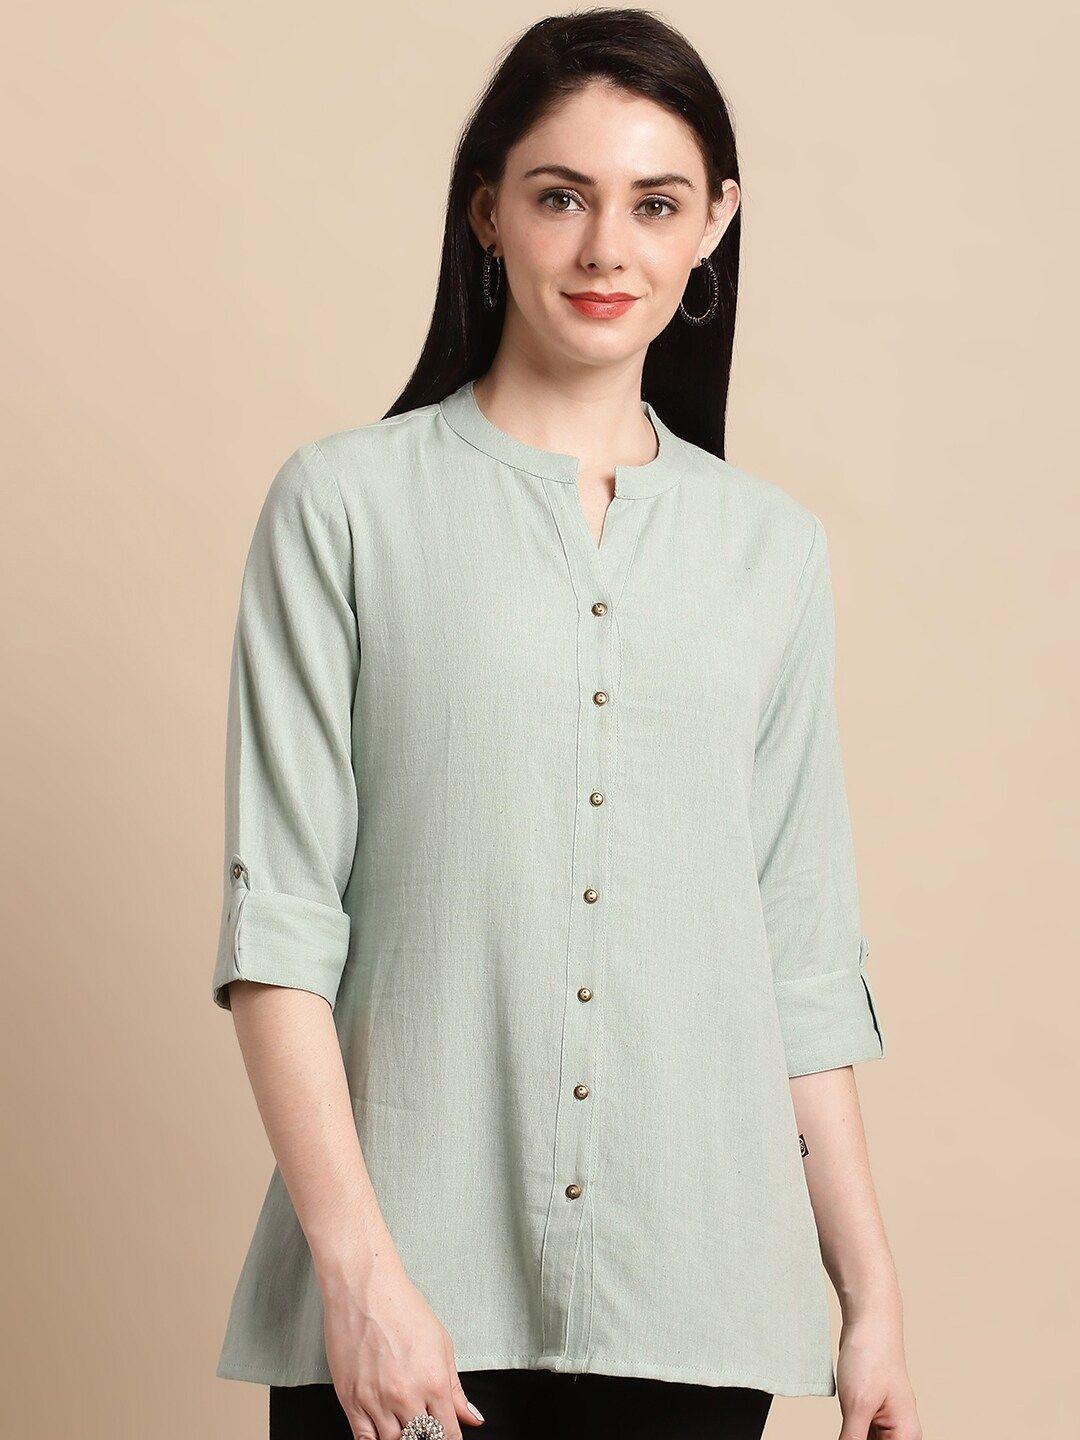 pistaa-mandarin-collar-roll-up-sleeves-pure-cotton-kurti